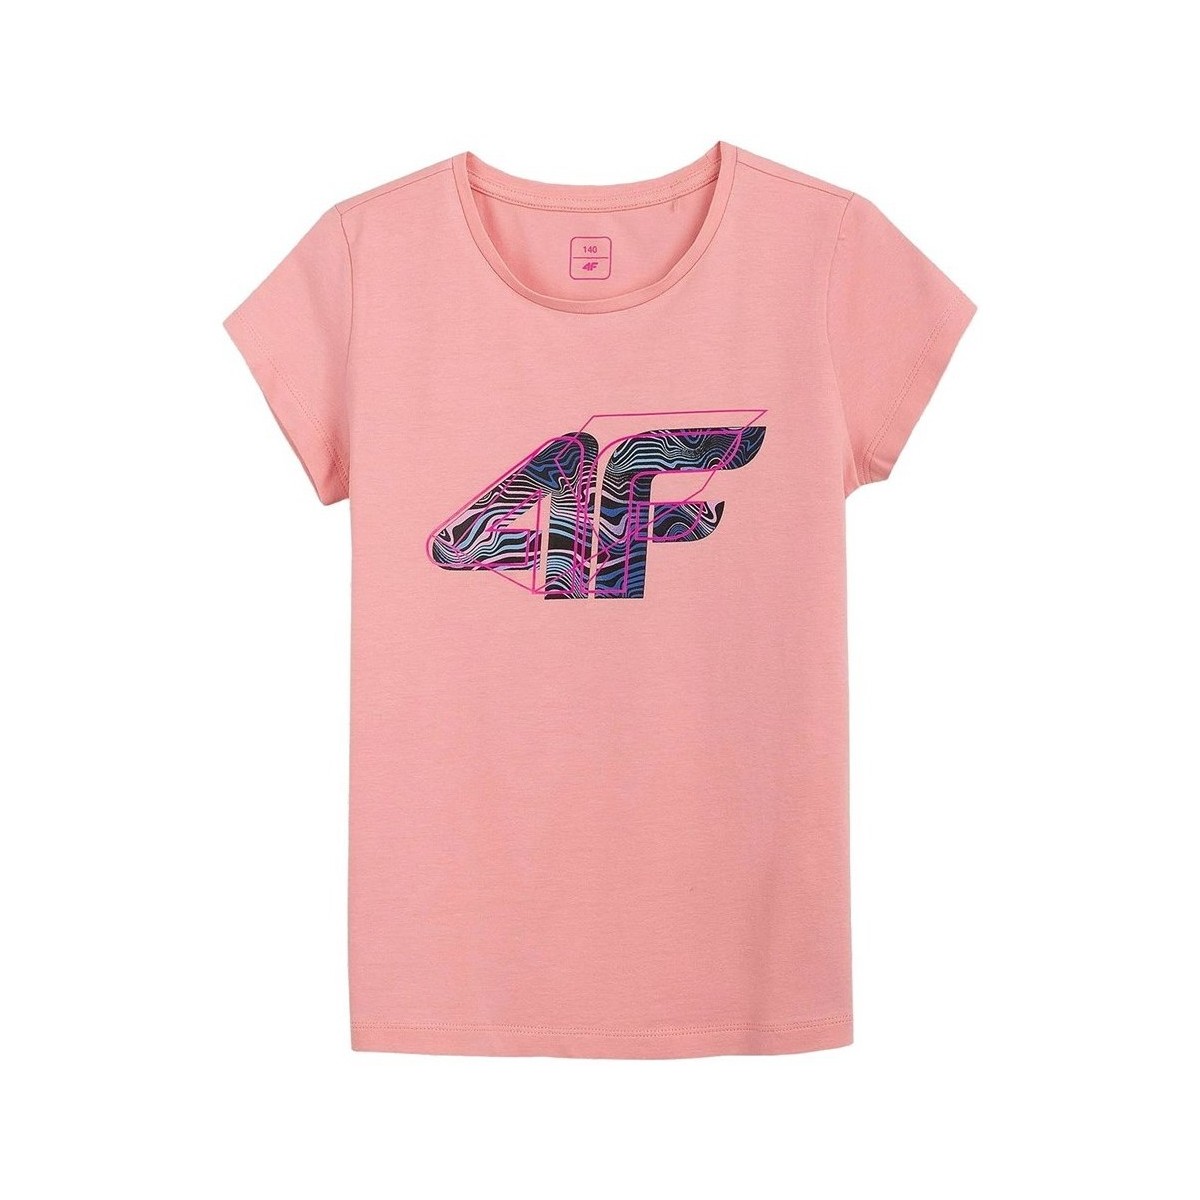 Kleidung Mädchen T-Shirts 4F JTSD003A Rosa